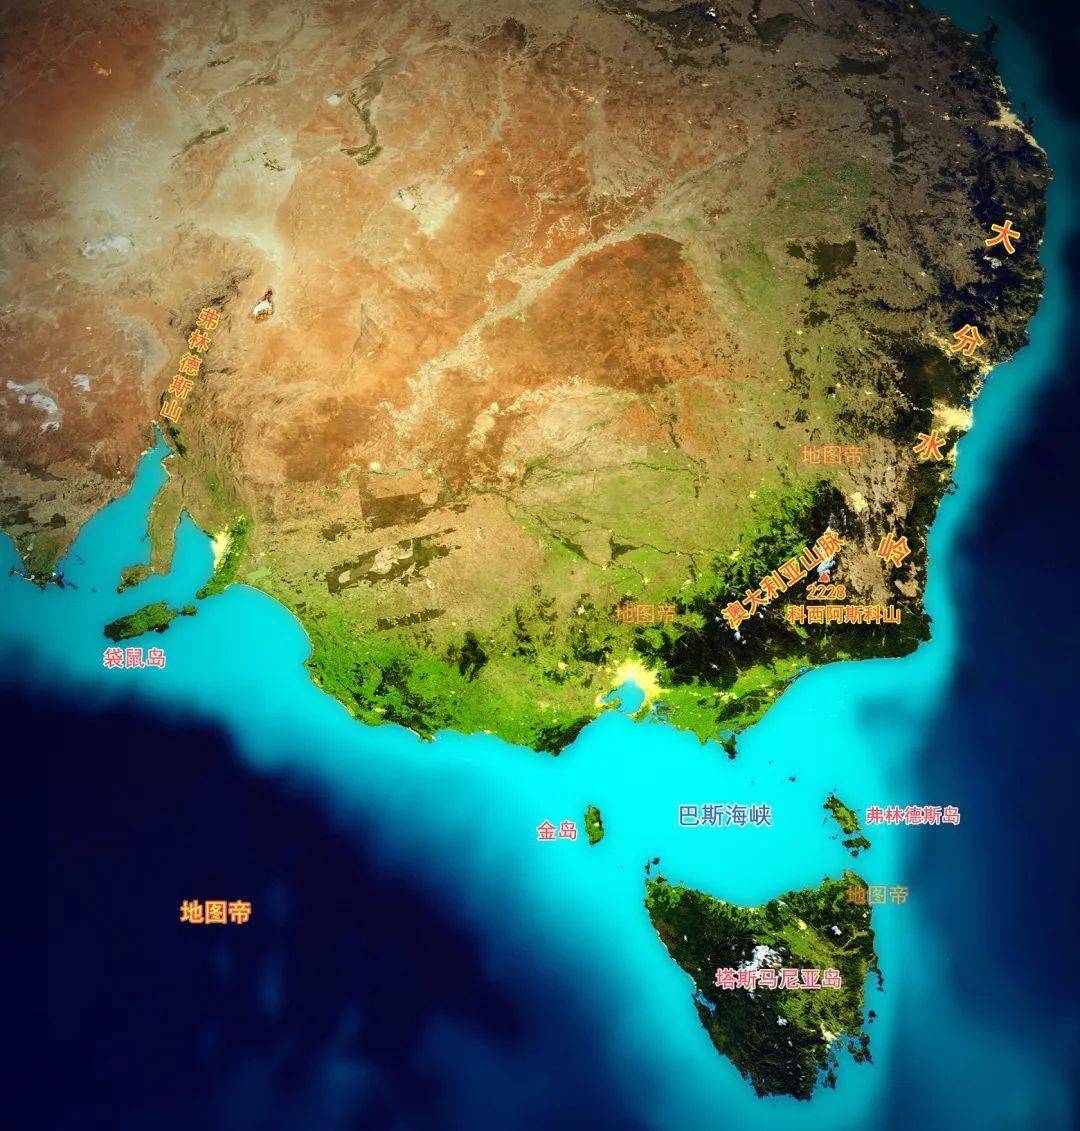 各大洲的东南端,为何都有一面积较大的岛?